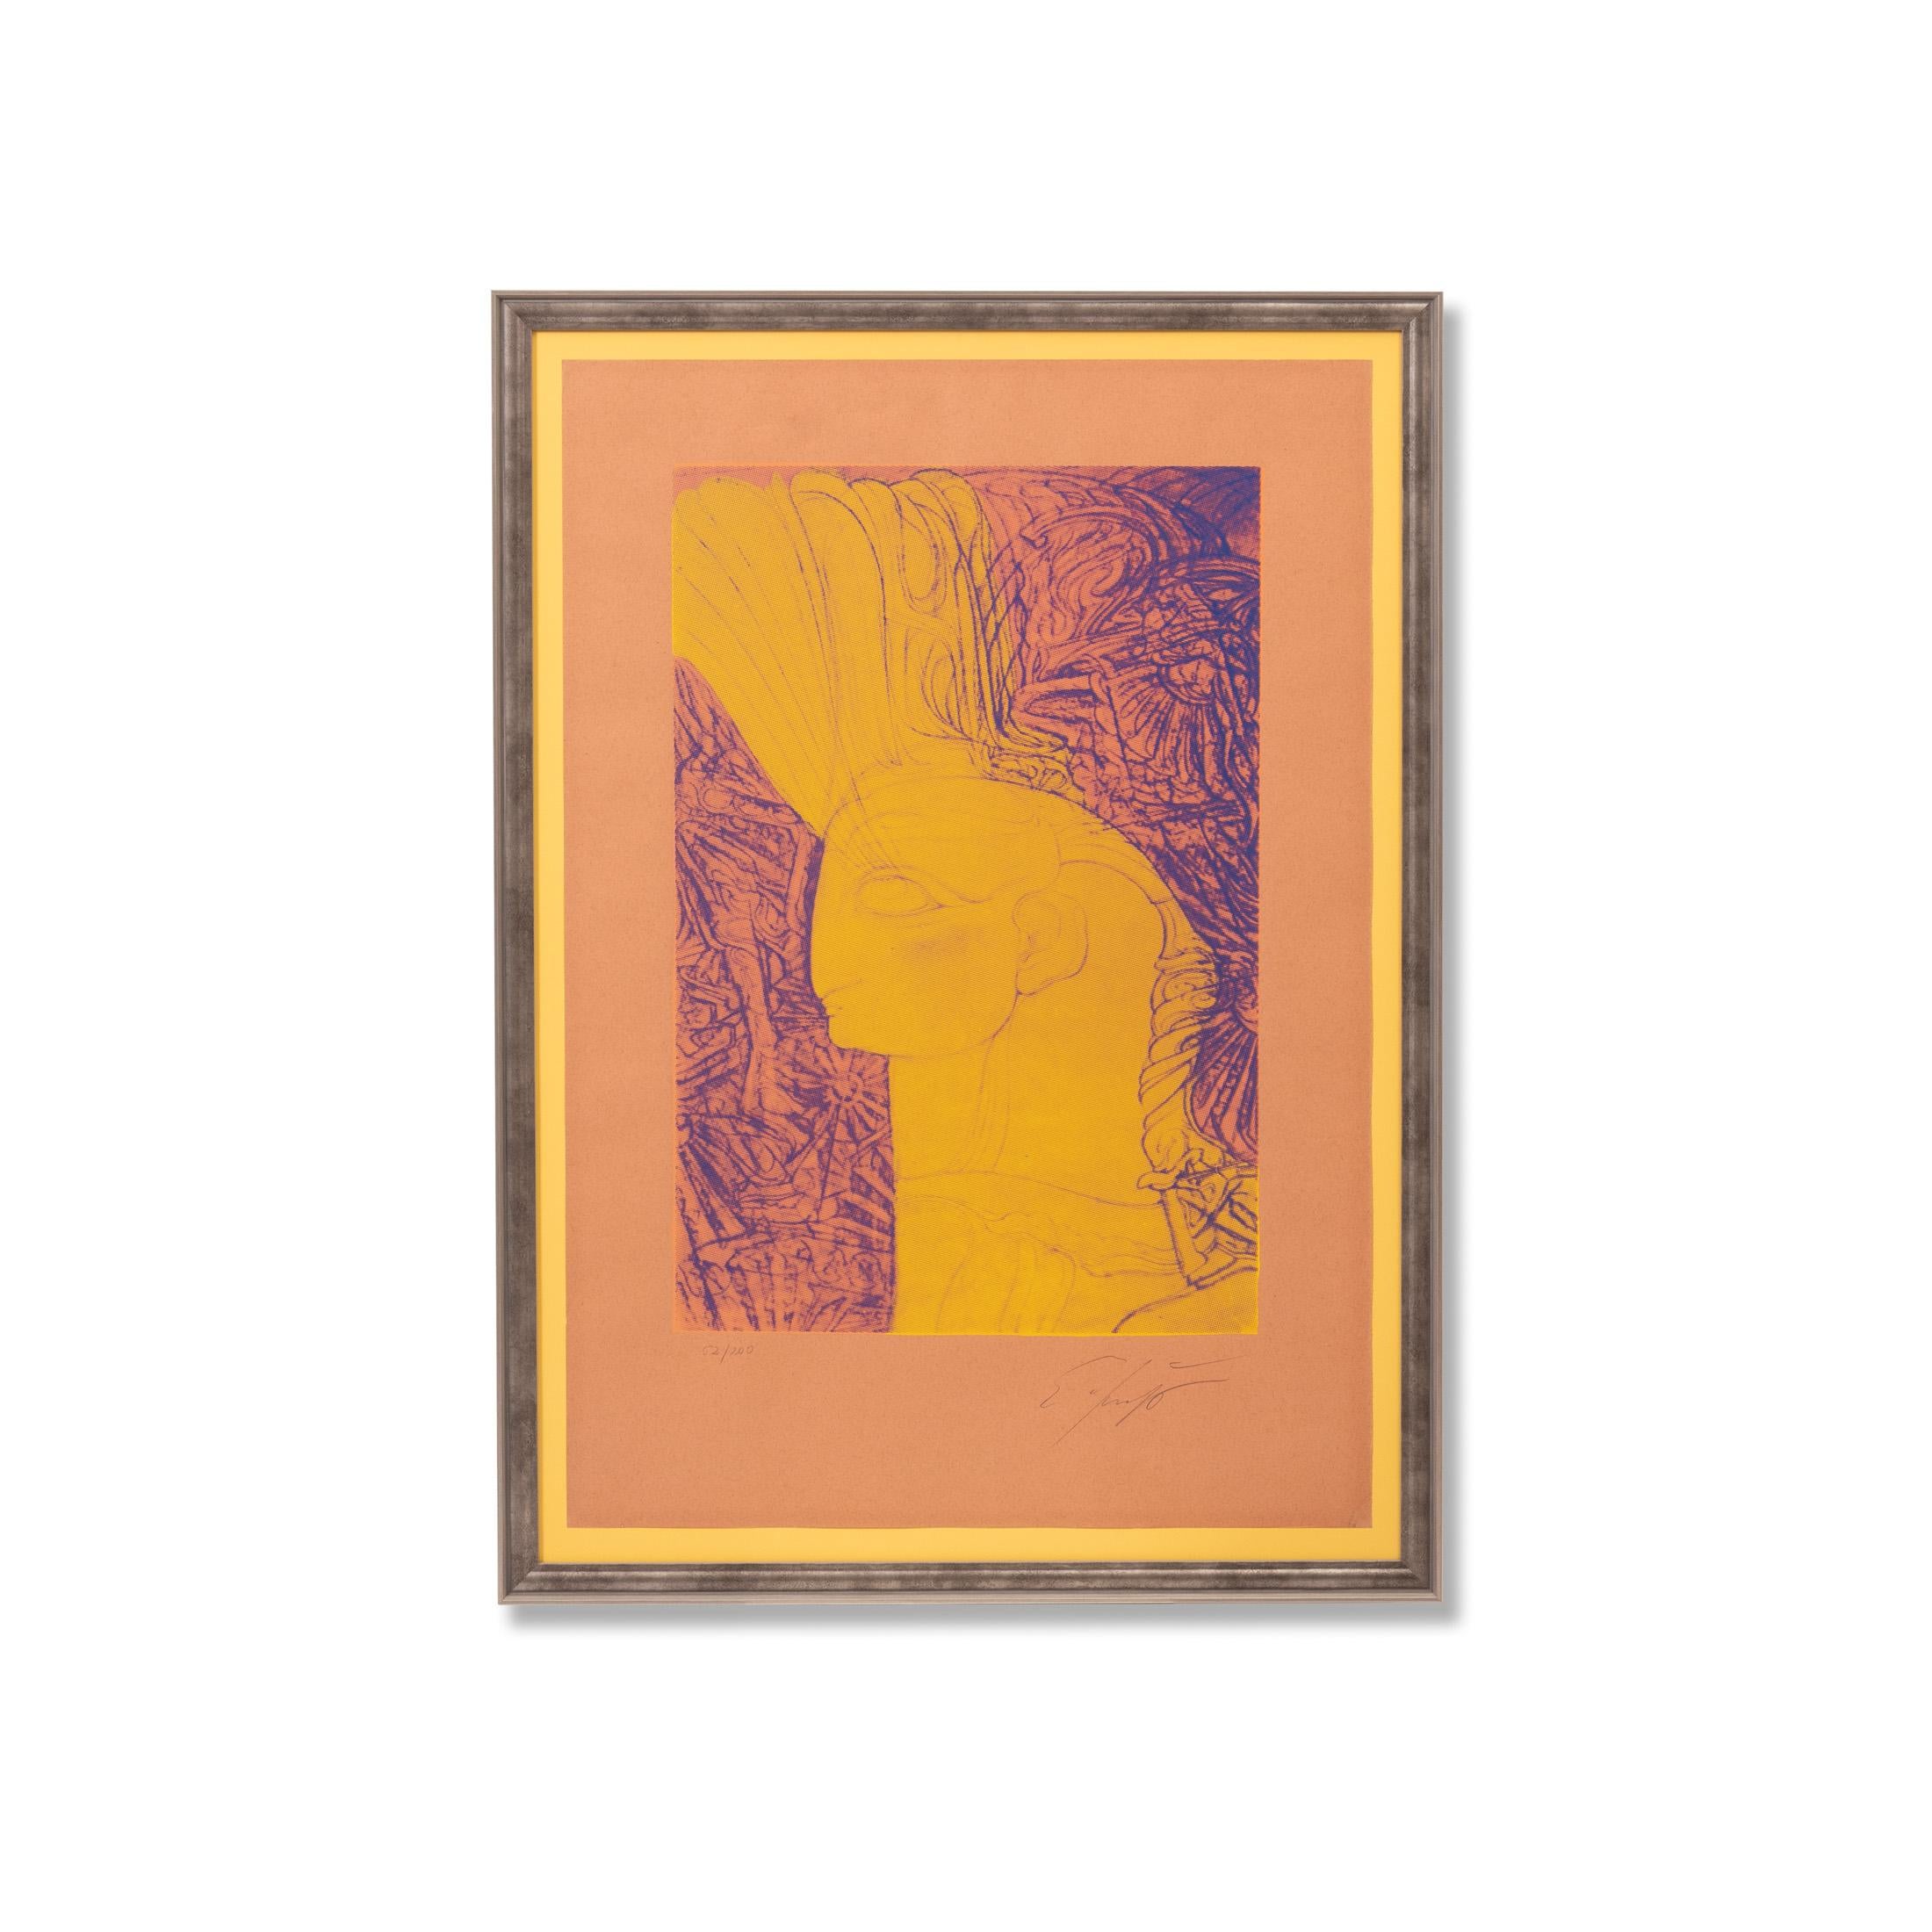 Ernst Fuchs (1930 - 2015)

„Herz eines Cherubs“, geschaffen 1982

Farbserigrafie, Auflage: 200 Stück, signiert und nummeriert

Abmessungen 67,7 cm x 45 cm

Ernst Fuchs wurde am 13. Februar 1930 in Wien-Ottakring als einziges Kind von Maximilian und